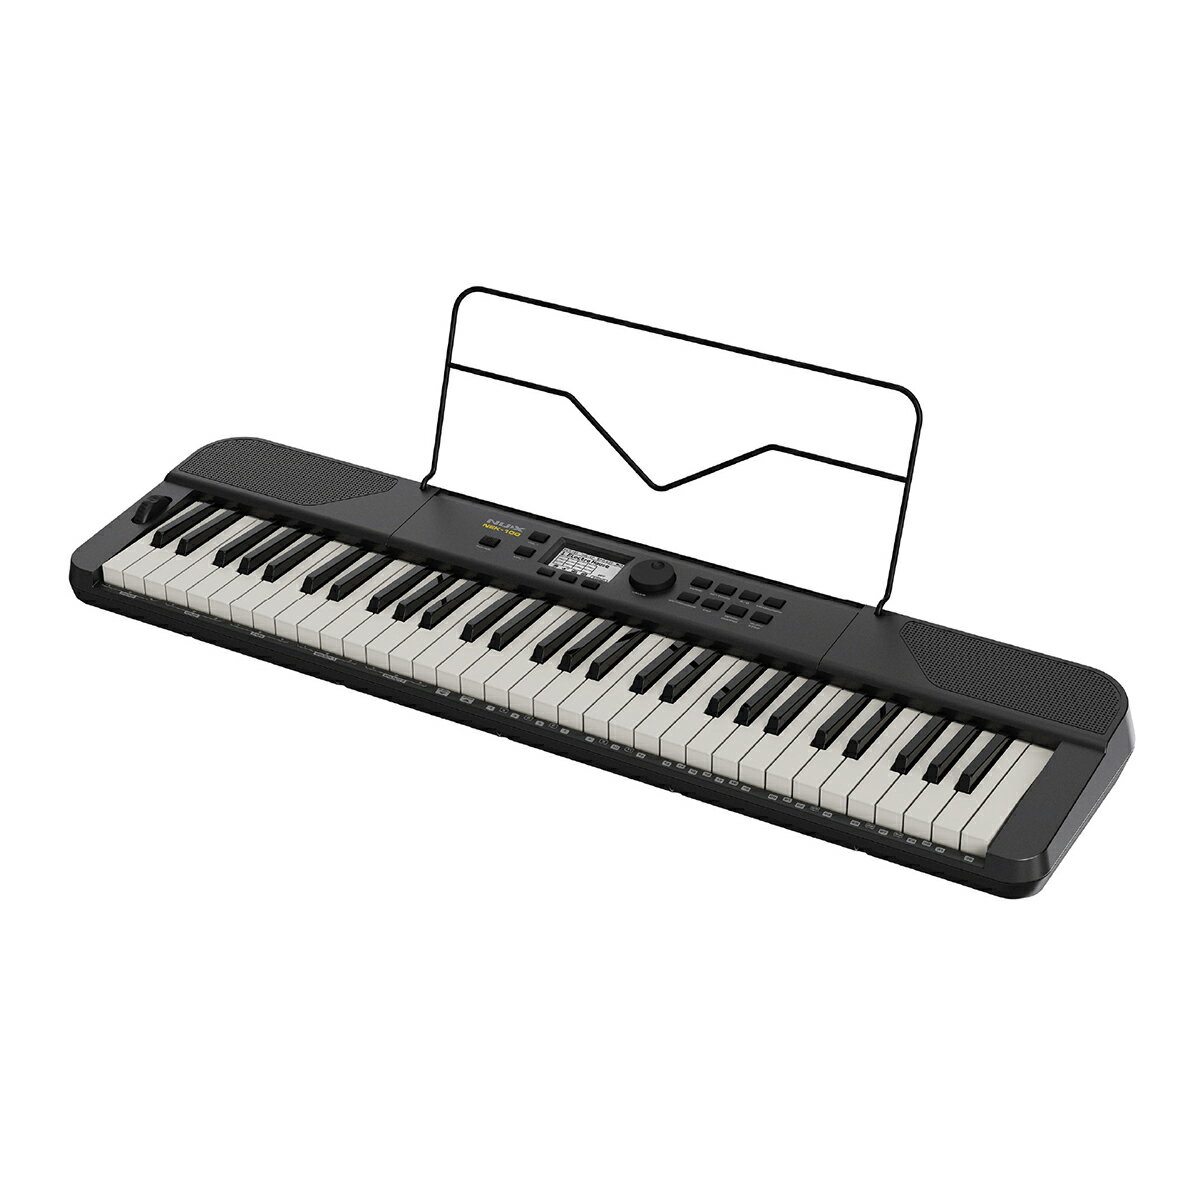 500種類の音色、充電式バッテリーとスピーカーを内蔵したポーダブルキーボード【特徴】・タッチセンシティブ61鍵盤キーボード採用・5段階のタッチレスポンス・グランドピアノを始めとする500種類のサウンド・100種類のリズムスタイルと100種類のデモソング・アクティブな演奏が可能なピッチベンドホイール・2つのサウンドをアサインできるキーボードスプリット機能・2種類の音色をミックス可能なデュアルボイス機能・5つのユーザープリセット・自動伴奏機能・ダイナミックな演奏が可能なLive Music機能・トランスポーズ＆オクターブシフト機能・表現を広げる3種類のリバーブエフェクト・外部電源無しで駆動可能な充電式バッテリー・充分な音量を出力可能な内蔵スピーカー・USB MIDI機能・付属のNBT-1 Bluetooth モジュールを使用することでBluetooth オーディオ/MIDI使用可能・譜面置き付属【野外でのパフォーマンスに最適な大容量バッテリー】3000mAhの充電式バッテリーが搭載されており、10時間以上の連続駆動が可能です。本体の重さも3.1kg以下のため、持ち運びも簡単です。また、スピーカーも内蔵しているため、野外パフォーマンスなどに最適です。【ライブミュージックモード】内蔵された20 のライブミュージックソングはそれぞれ、3つのフレーズ オプションを備えた 4つのトラックで構成されているため、フレーズを自由に組み合わせたり、ブリッジを追加したり、さまざまなエフェクトを使用したりすることで、より表現力豊かなライブパフォーマンスを実現します。【様々なスタイルに対応する500種類のサウンド】グランドピアノを始めとした500種類のサウンドが搭載されています。オルガンやエレクトリックピアノ、オーケストラまで、あらゆるサウンドを使用可能です。また、デュアルレイヤー機能やキーボードスプリット機能を使用することで、さらに表現の幅を広げることができます。【自動伴奏機能】自動伴奏機能を使用すれば、シングル/マルチフィンガーコードで、様々なスタイルのバンドサウンドを演奏できます。ポップス、ジャズ、ロック、ダンスなどをカバーする100種類のデモソングと100種類のリズムスタイルにより、どんなスタイルにも対応できます。【モダンでシックなデザイン】軽量ながらもモダンでシックなデザインに設計されたNEK-100は使用する場所を選びません。家での練習からアウトドアパフォーマンスまで、ありとあらゆる場面で素晴らしいパフォーマンスを発揮できます。【詳細情報】■ディスプレイ：TFT LCDスクリーン■キーボード：61 鍵盤タッチセンシティブキーボード■タッチレスポンス：5 種類 (Light1/Light2/Normal/Hard1/Hard2)■サウンド：500 種類■最大同時発音数：51 音■エフェクト：リバーブ (Room/Hall/Plate)■ファンクション：デュアルボイス、キーボードスプリット、トランスポーズ ( ± 12)、オクターブシフト( ± 1)、A4 チューニング(420 - 460Hz)、5 ユーザープリセット■自動伴奏：100 スタイル■メトロノーム：1 - 9ビート、4 ボイス、40 - 240 BPM レンジ、タップテンポ■ピッチベンドホイール：± 2 セミトーン■ライブミュージック：20 ライブミュージックソング■デモソング：100 種類■接続端子：3.5mm ステレオヘッドフォンジャック、6.35mmステレオ AUX OUT、3.5mm ステレオAUX IN、サステインペダルジャック、USB MIDI(Type-B)、Bluetooth オーディオ/MIDI( 別売りNBT-1 モジュール用入力)■スピーカー：2.2 x 4.9 x 2.5W x 2 ヶ■電源：12DC 2Aセンタープラス ( 付属 )、または内蔵充電式バッテリー■サイズ：252 x 80 x 925 mm(W x H x D)■重さ： 3.1 kgJANコード：6936257209559